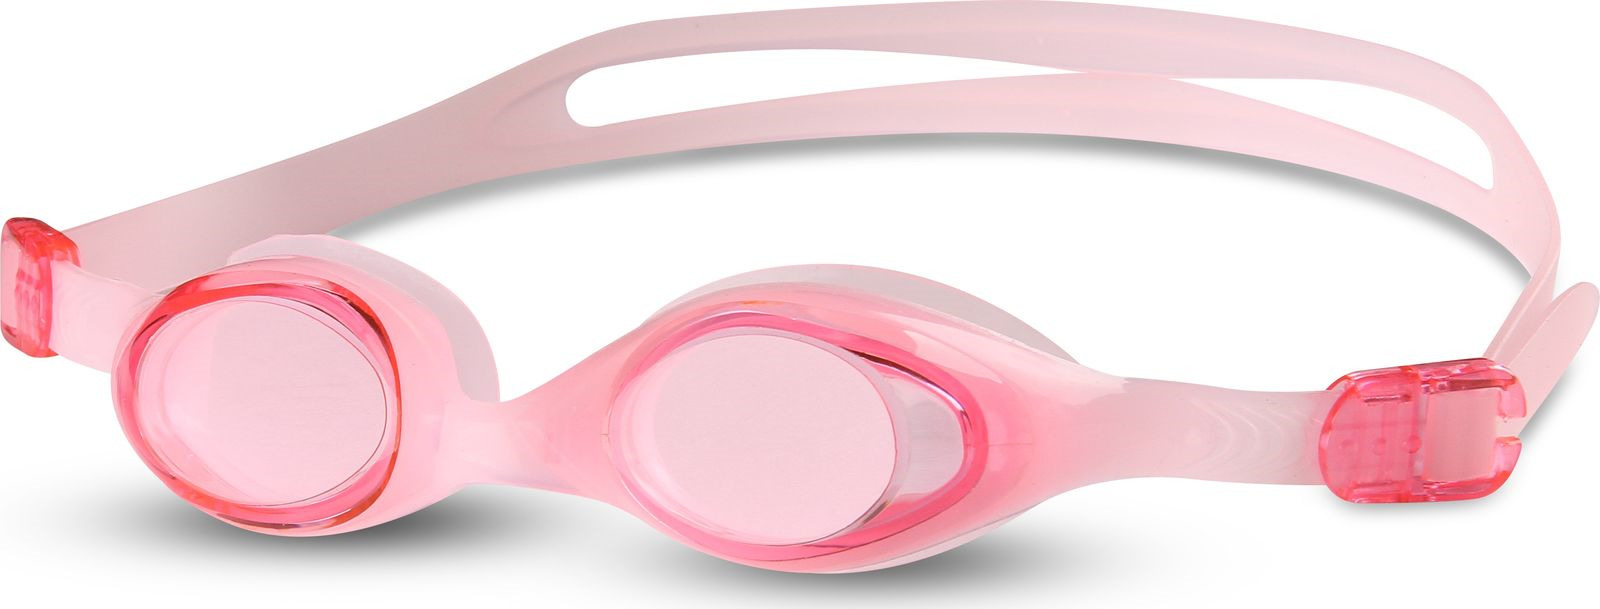 Очки для плавания детские Indigo, 605 G, розовый